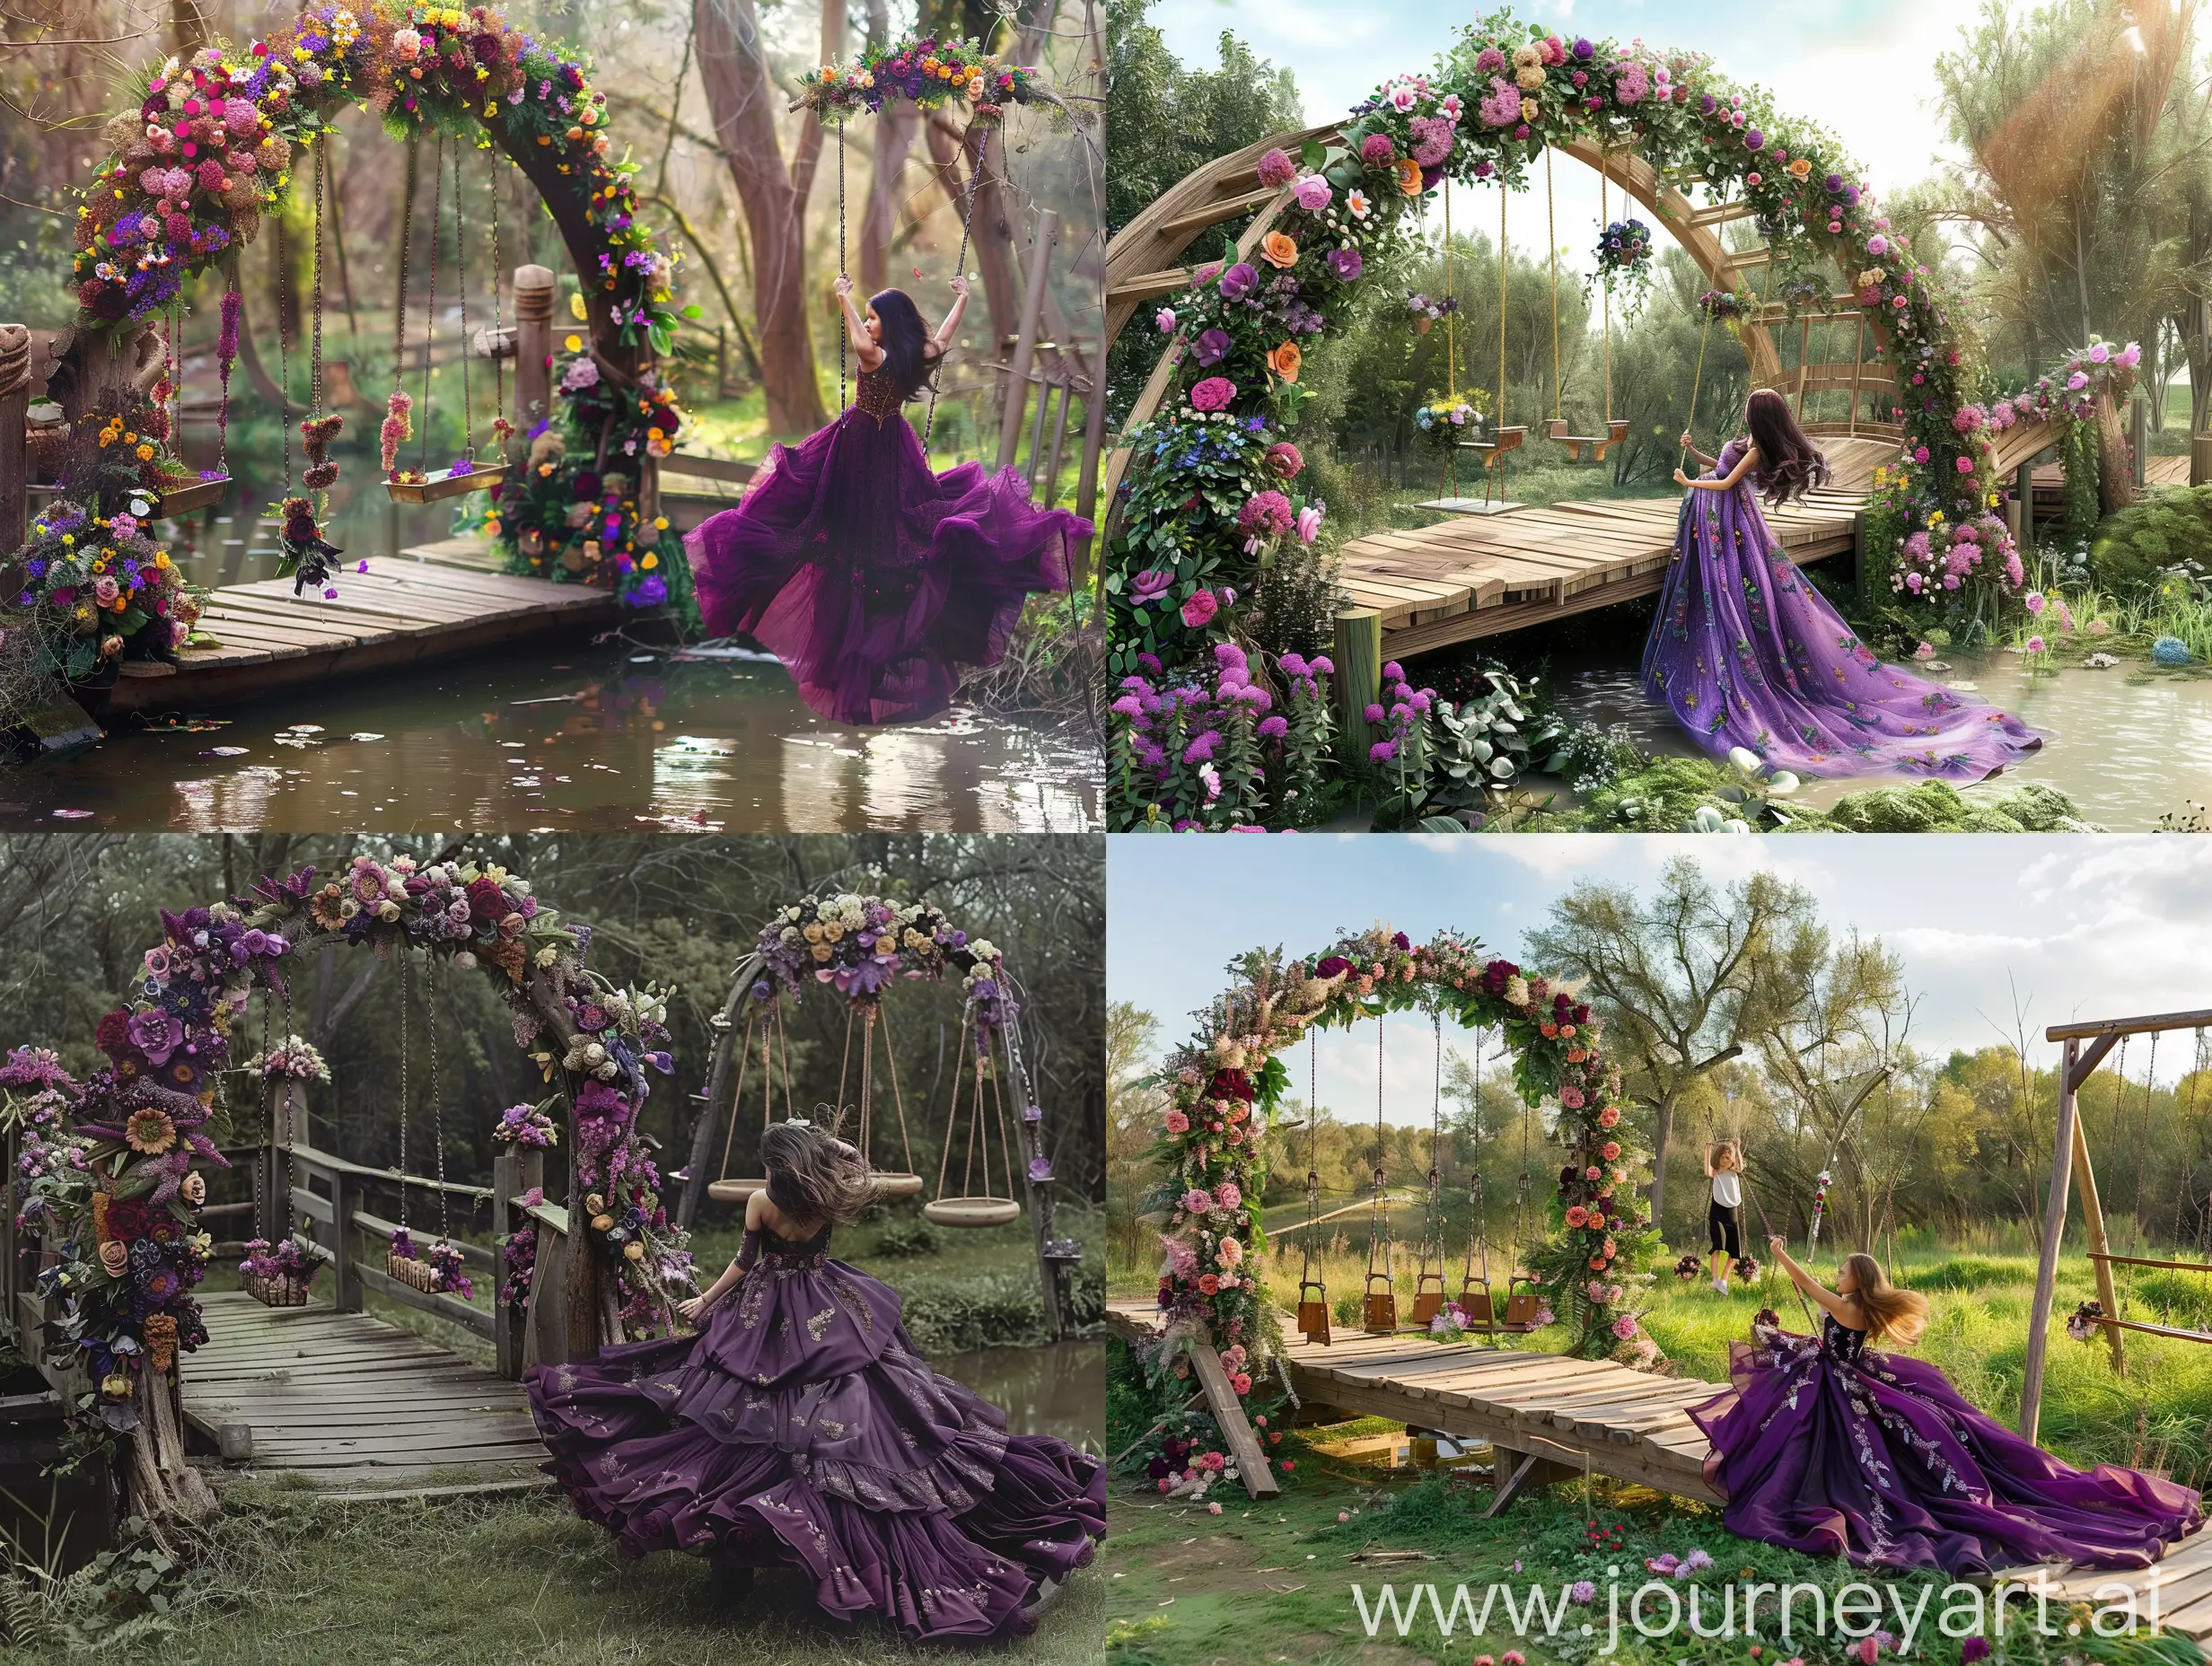 деревянный мостик на нем стоит арка украшенная цветами рядом висят качели украшенные цветами и на них качается девушка в длинном пышном фиалковом платье